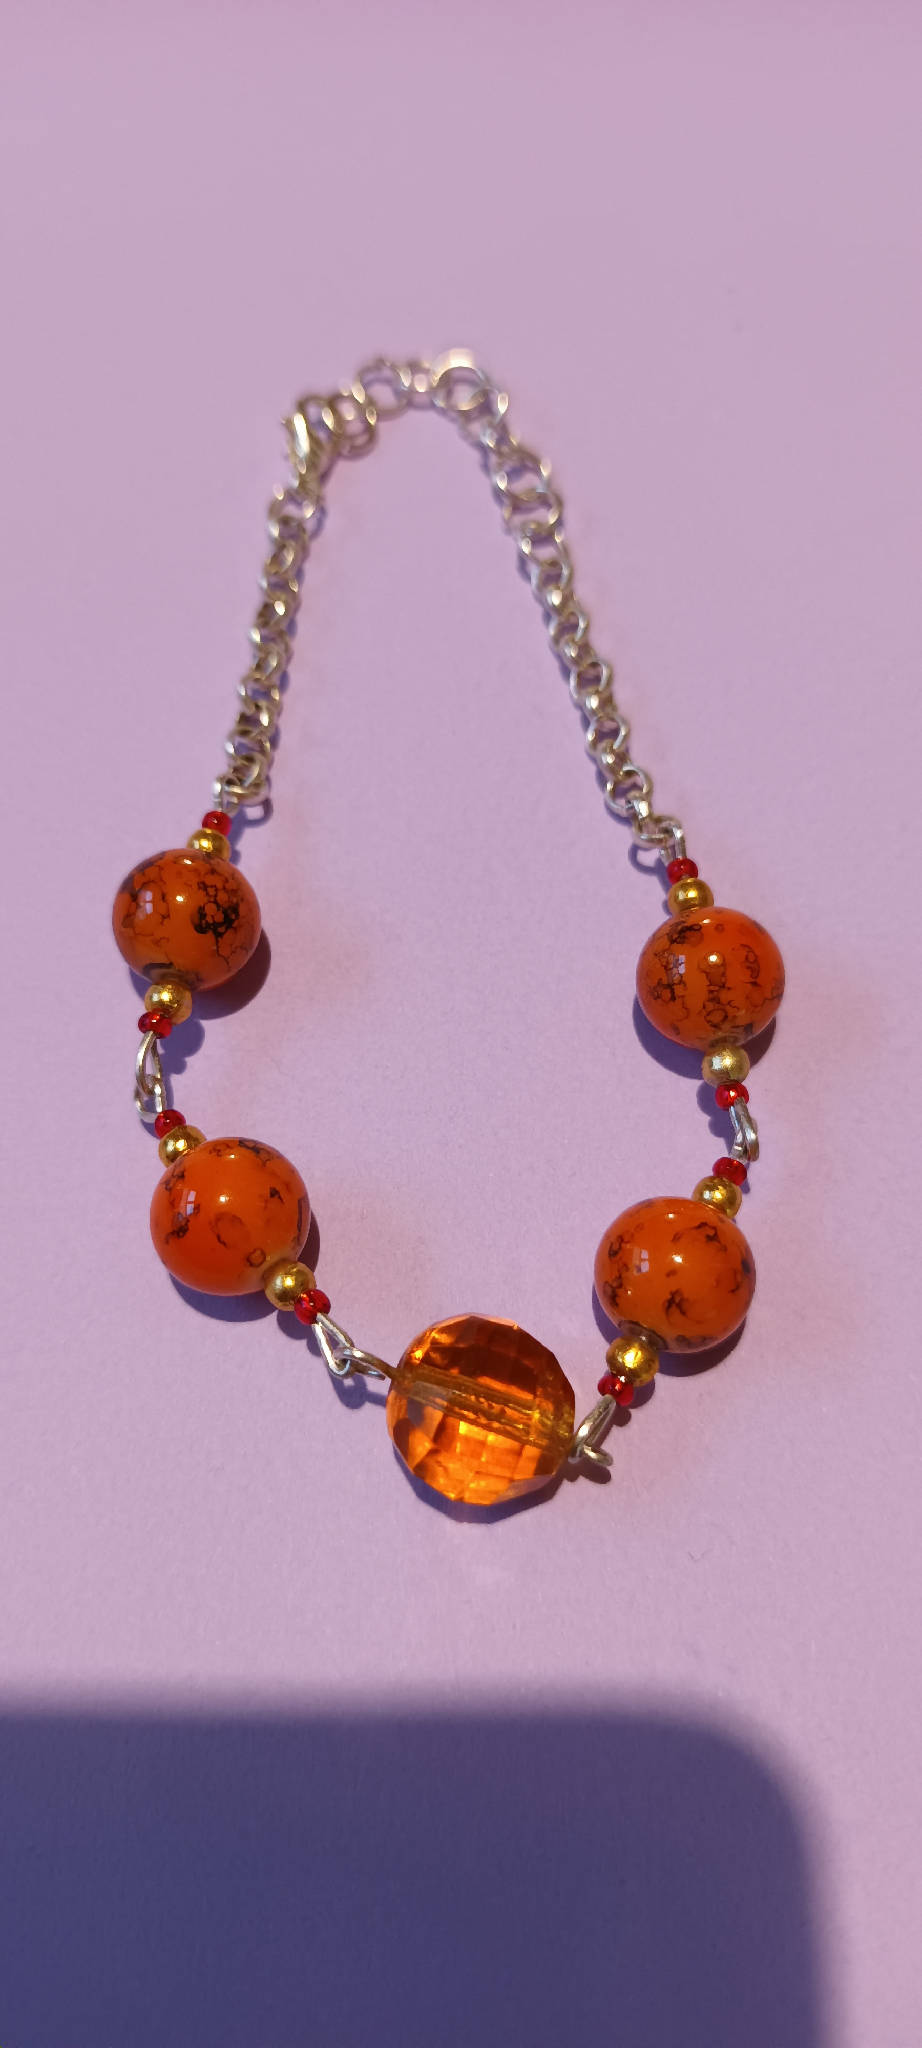 Orange bead and chain bracelet